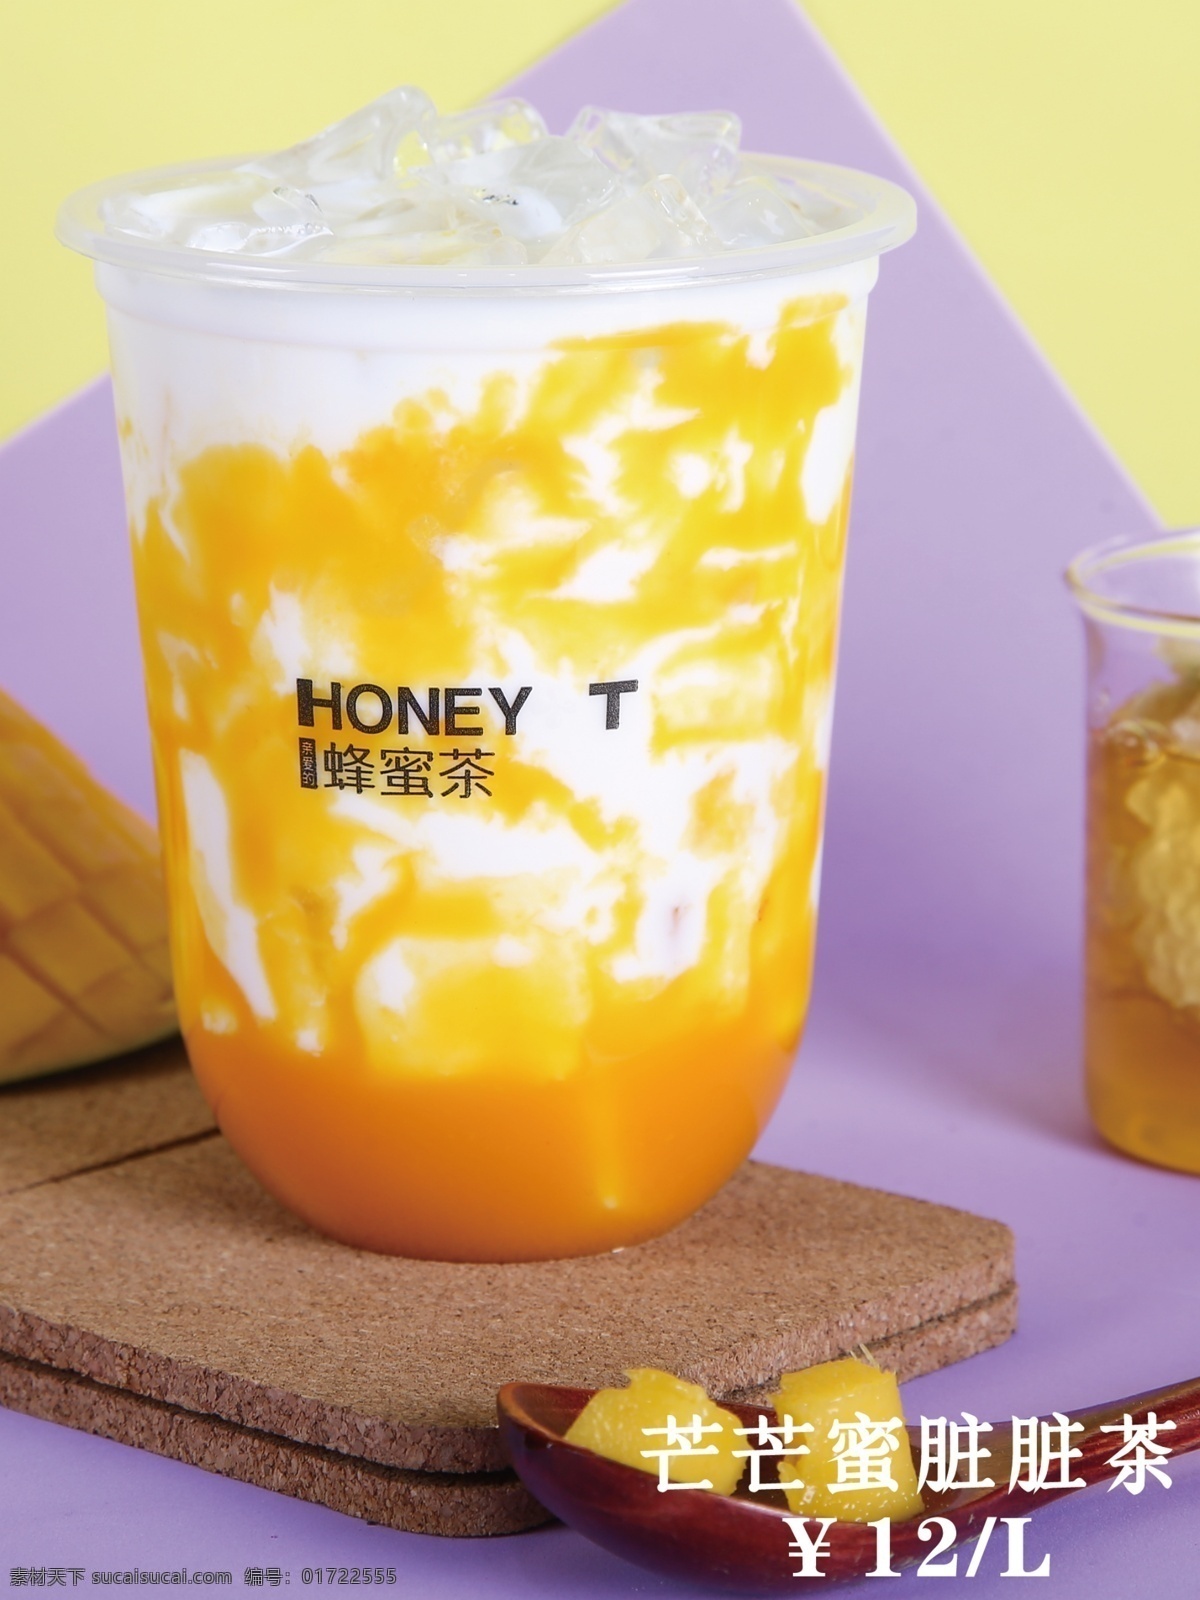 芒芒蜜脏脏茶 奶茶 饮料 蜂蜜 产品 奶茶店 蜂蜜茶 水 脏脏茶 海报